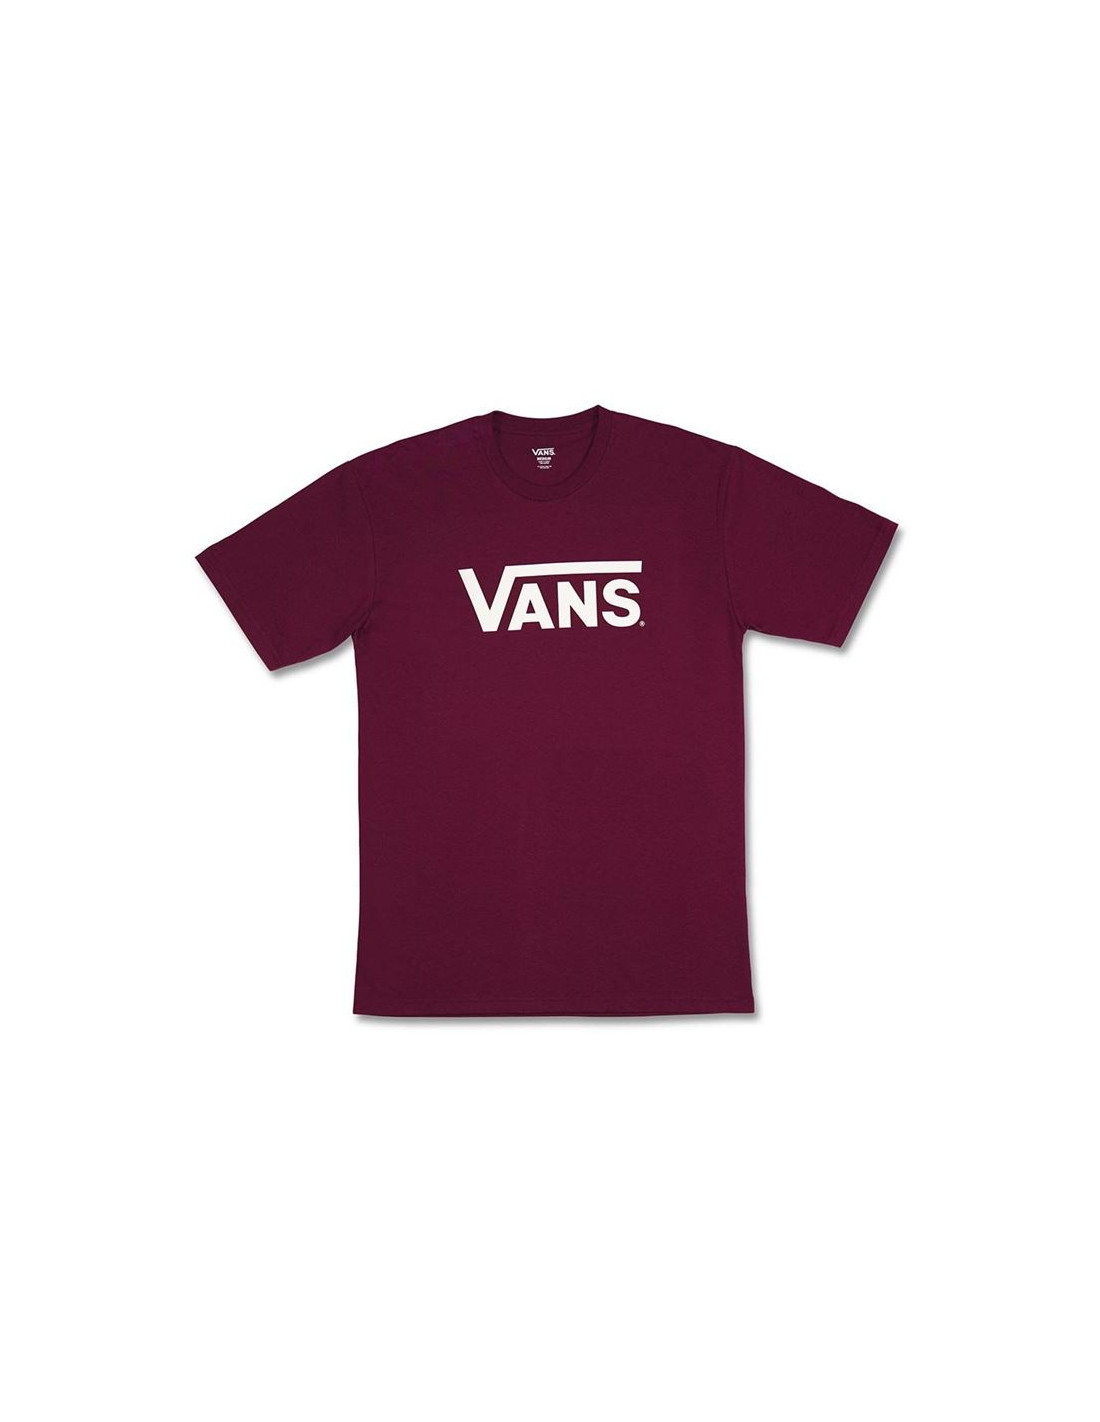 Camiseta vans drop v-b m burgundy